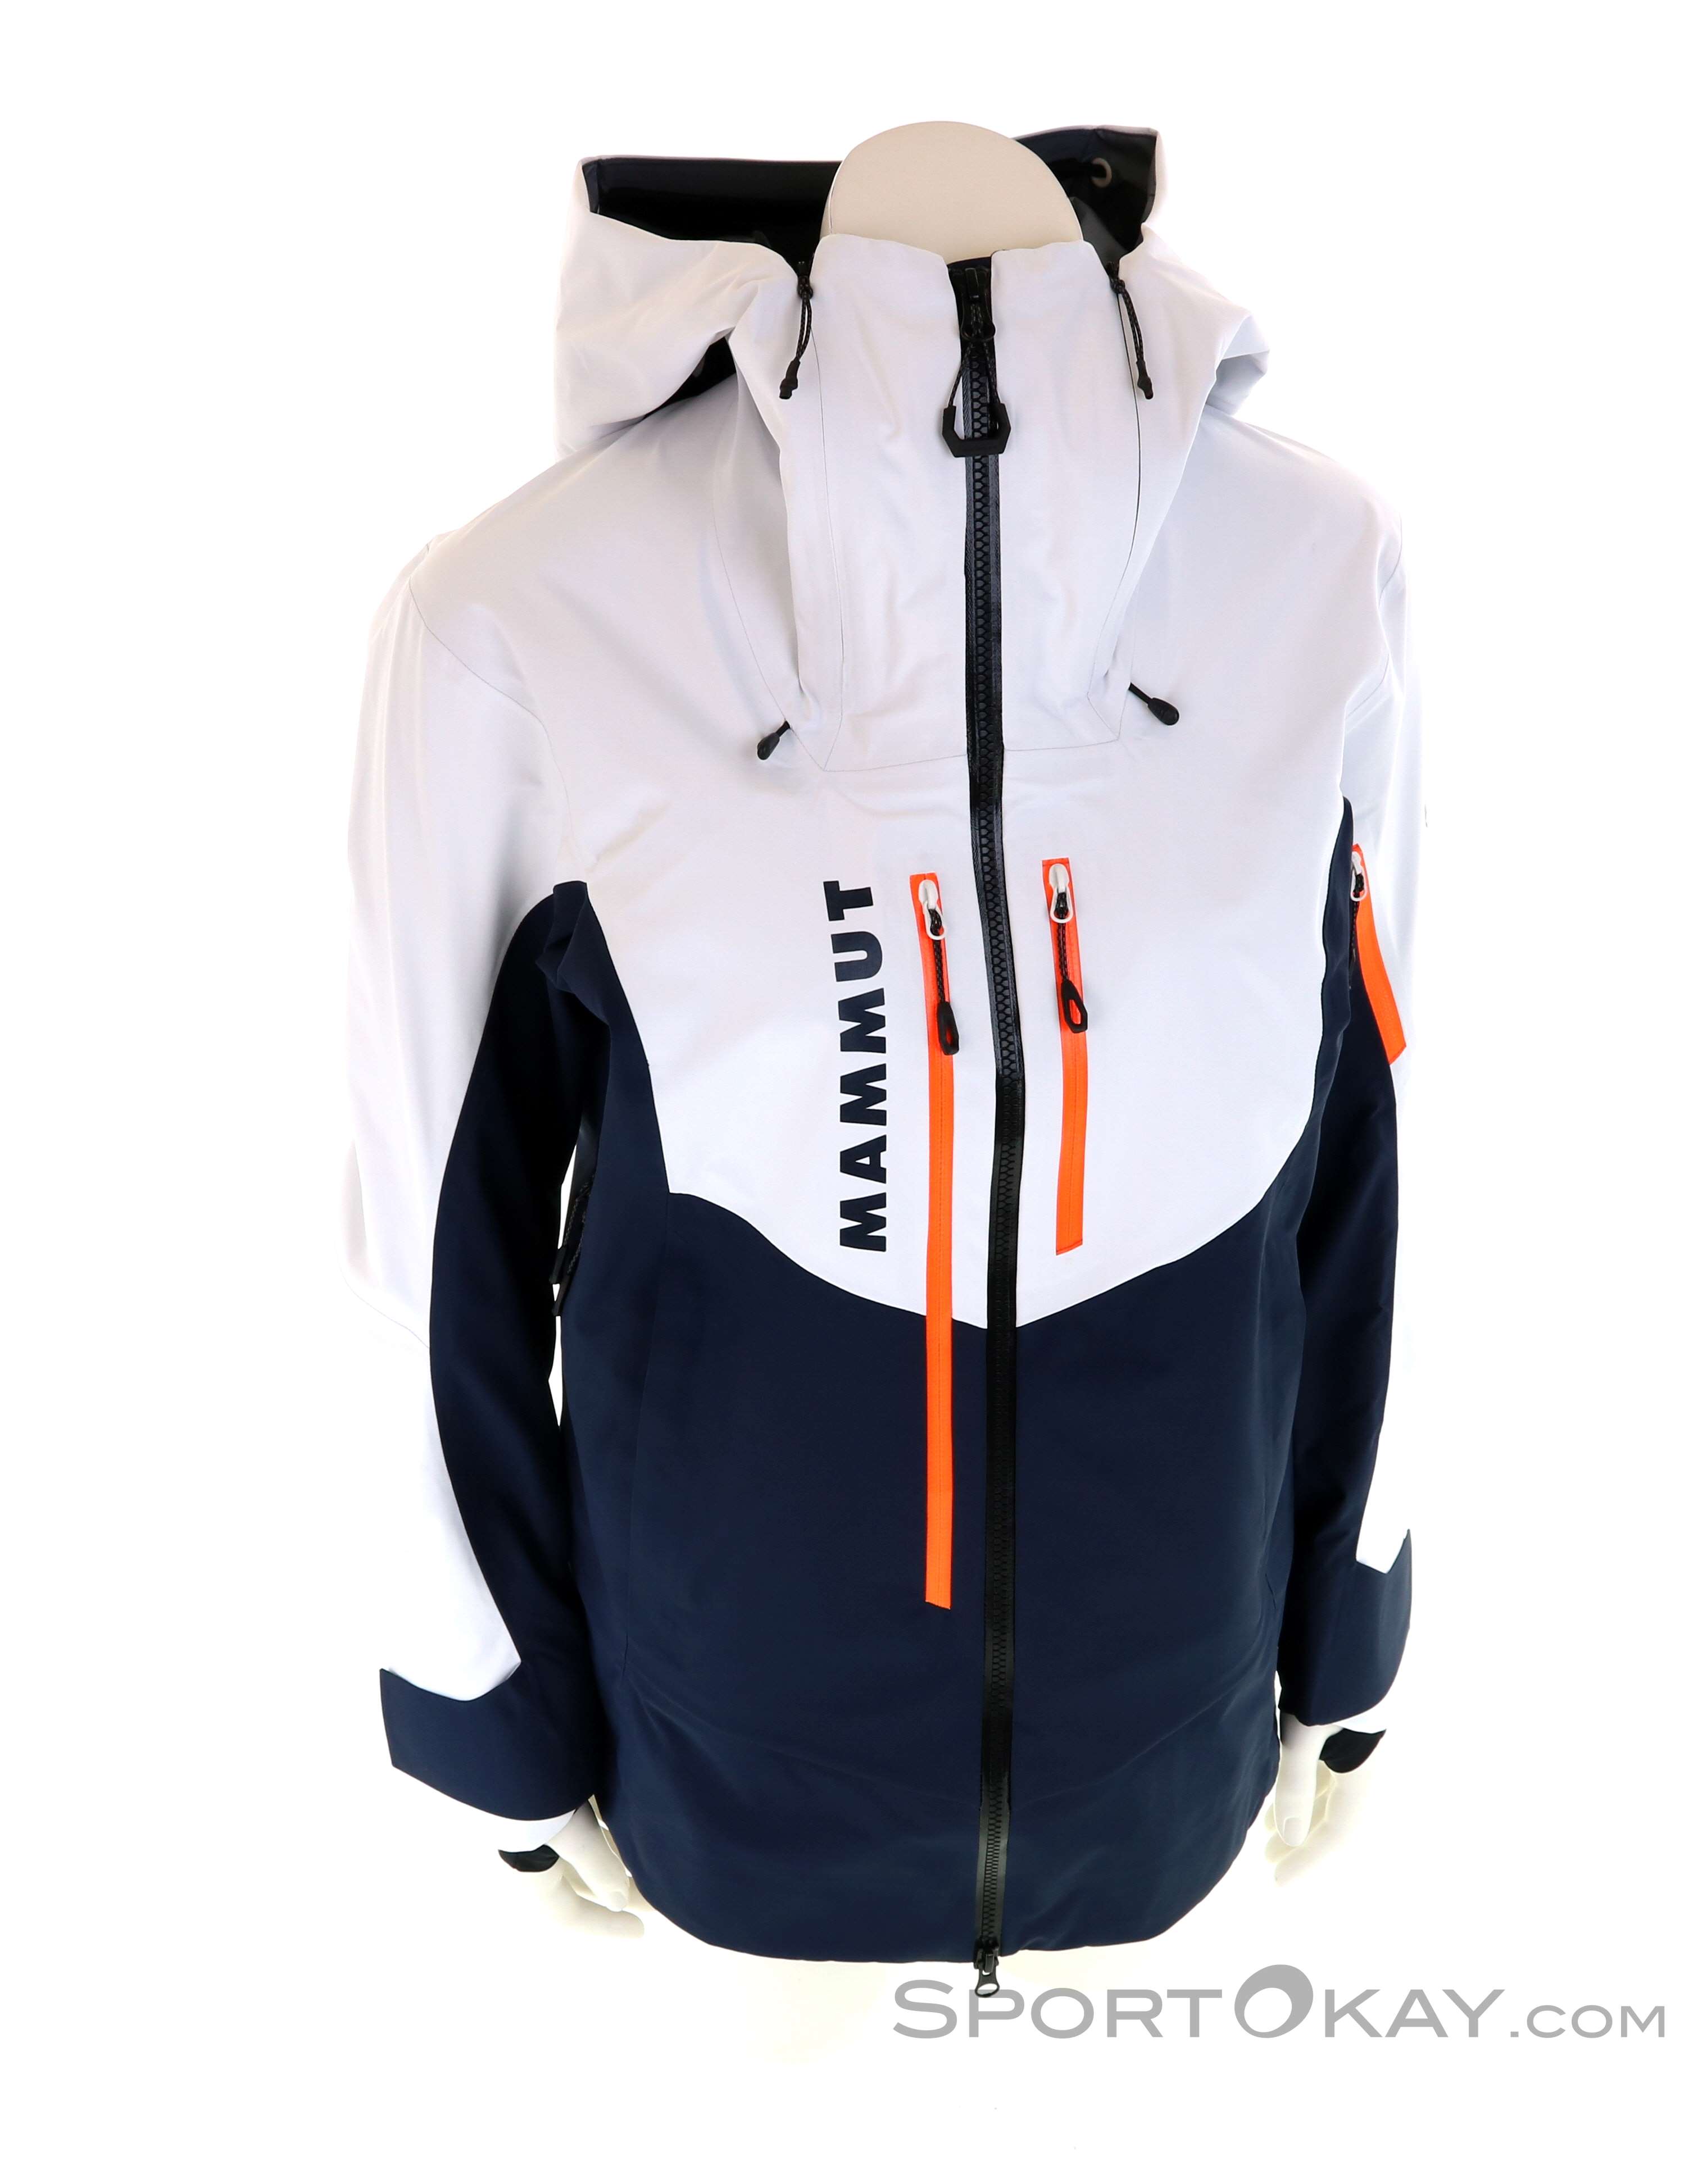 Mammut La Liste Pro Skijacke Damen marine-bright white im Online Shop von  SportScheck kaufen